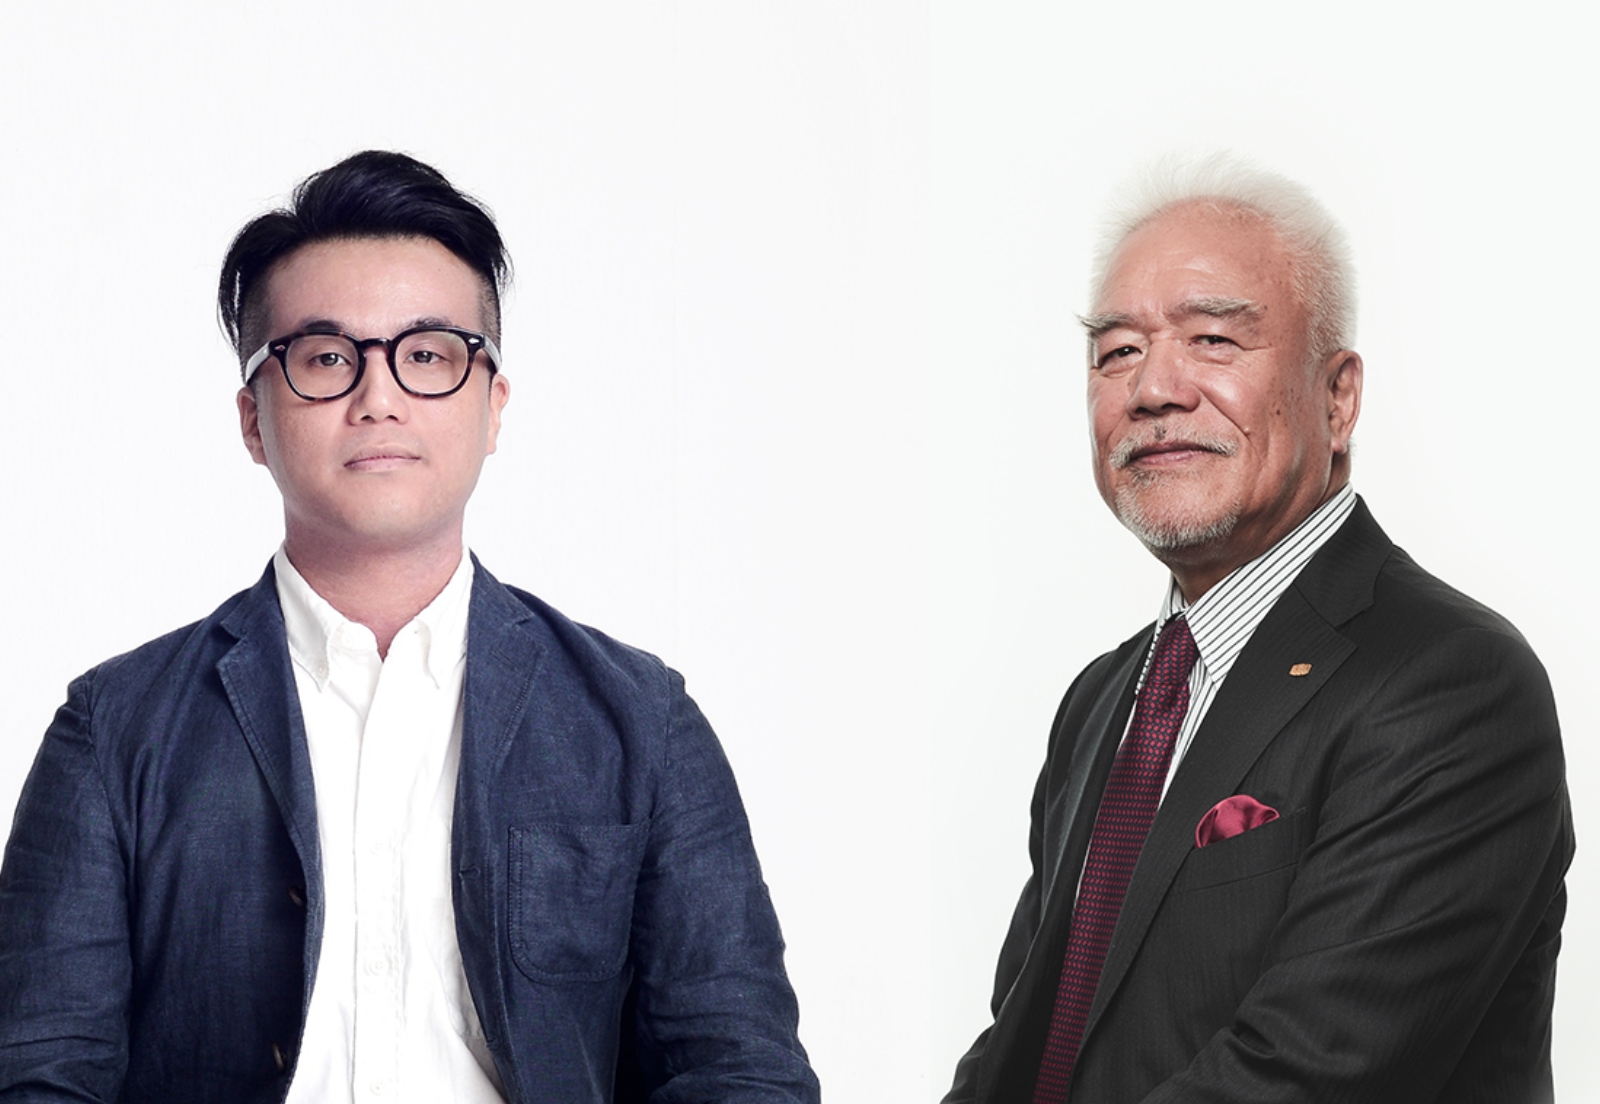 （左）Hintegro ファウンダー キース・チャン（Keith Chan）さん、（右）株式会社ユニオン 代表取締役 社長 立野純三さん